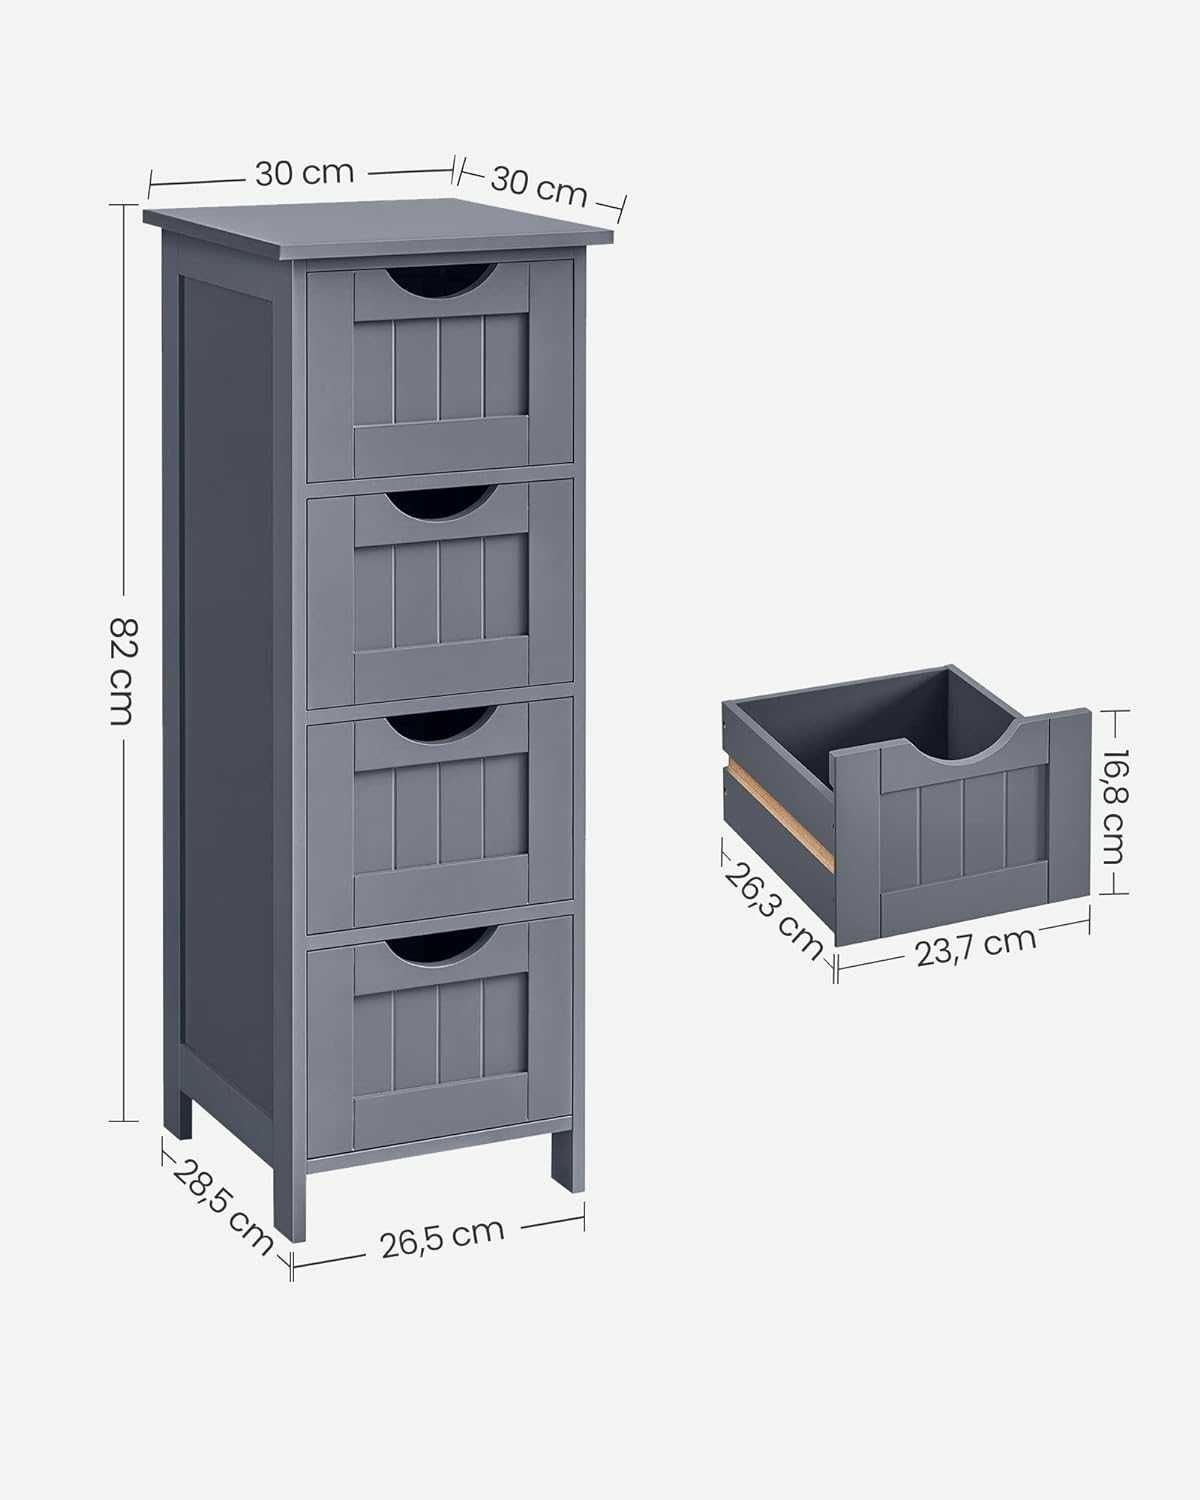 6M36 -35% szafka łazienkowa półka regał słupek z szufladami 30x30x82cm